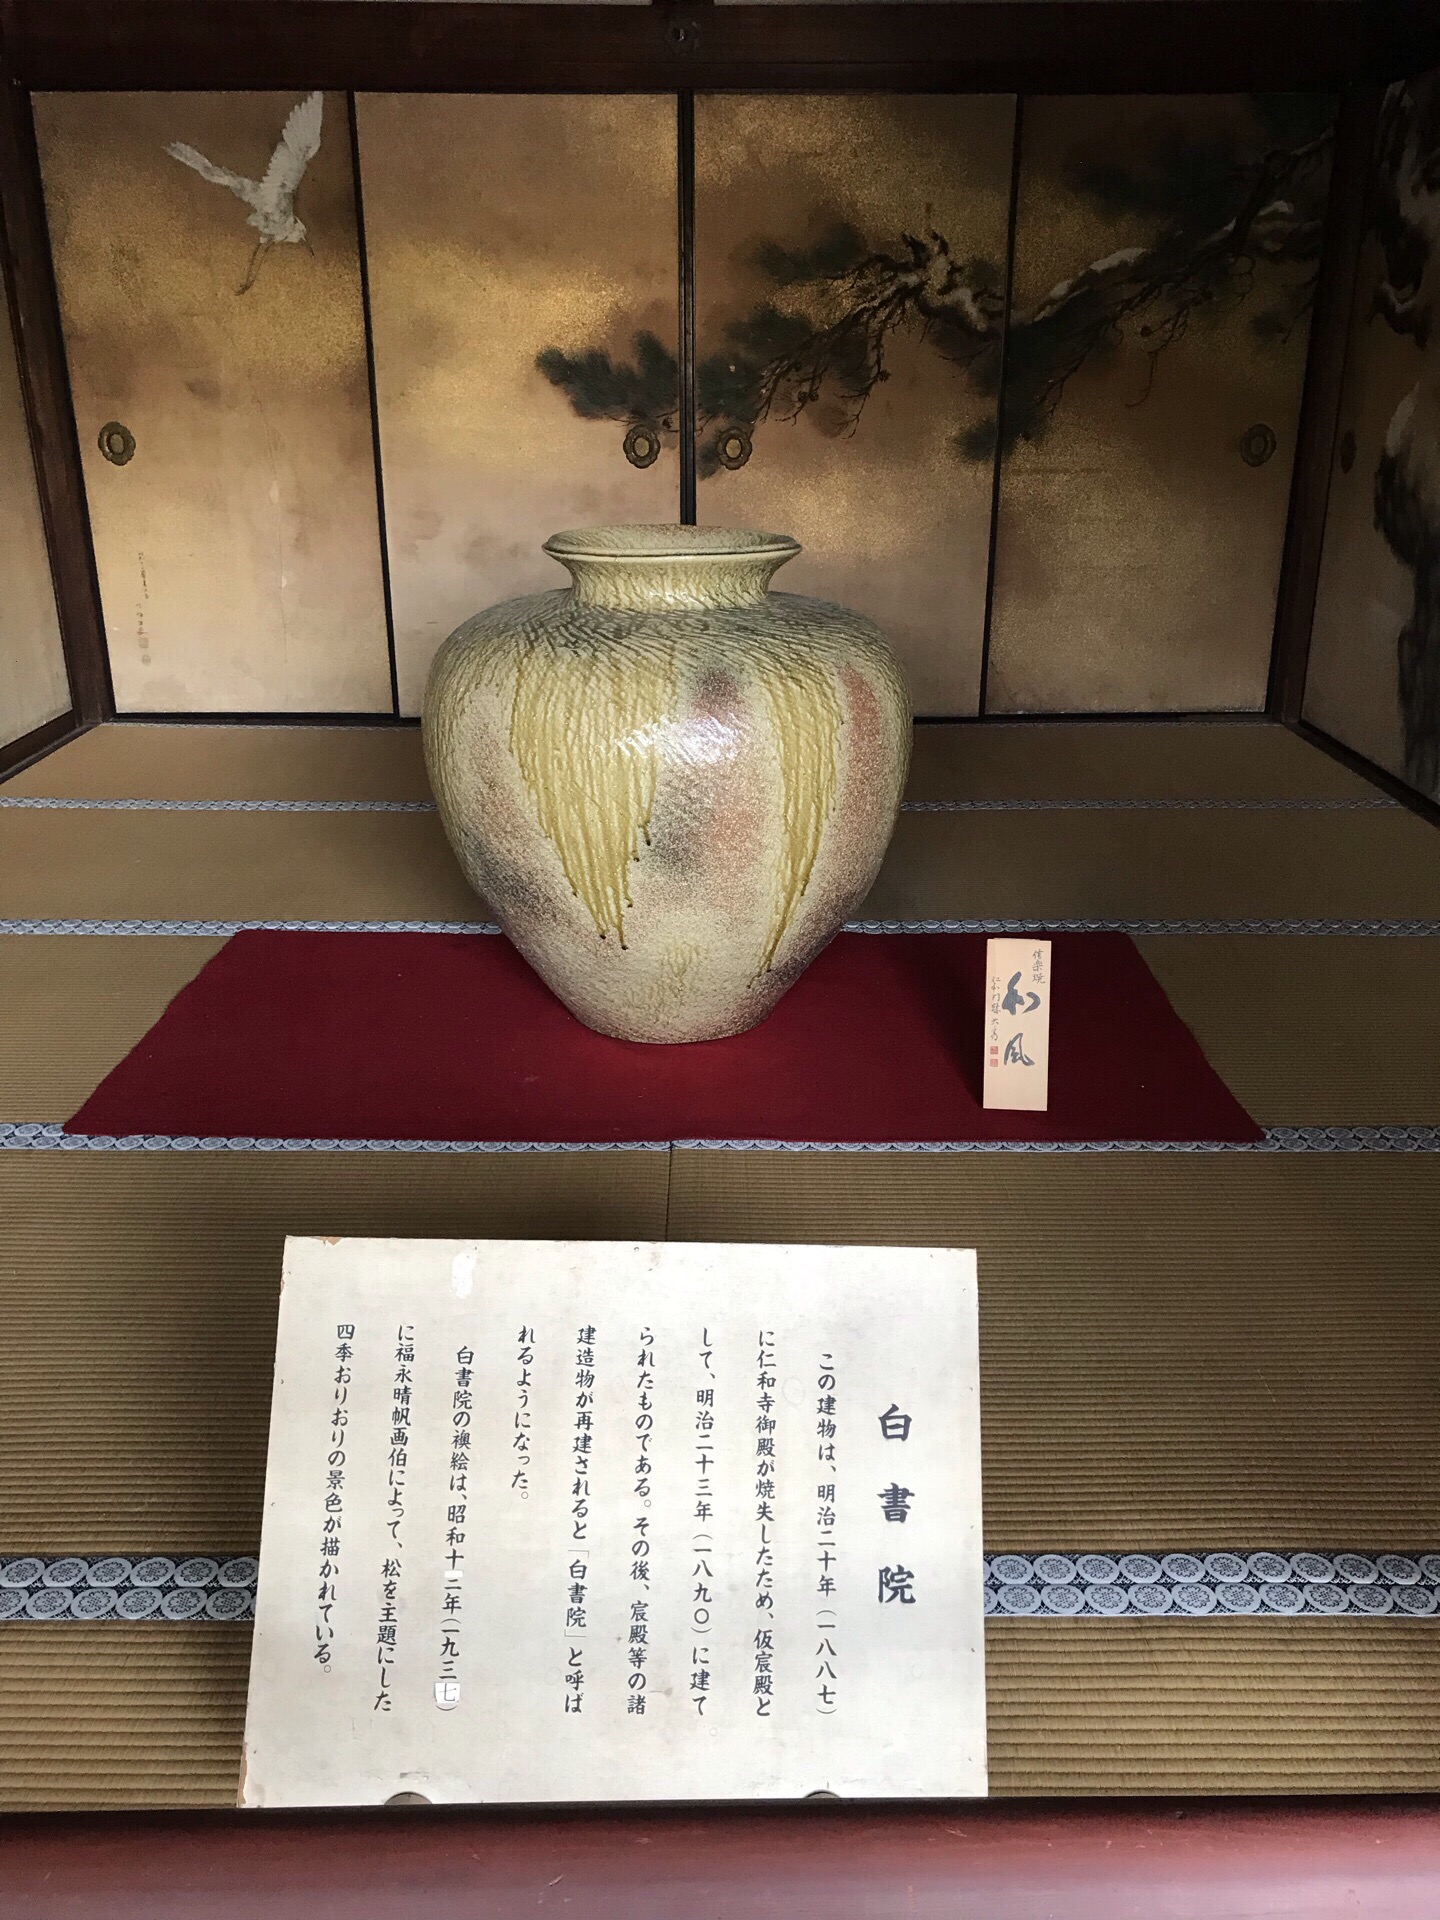 列入世遗名录的珍贵古迹——京都仁和寺